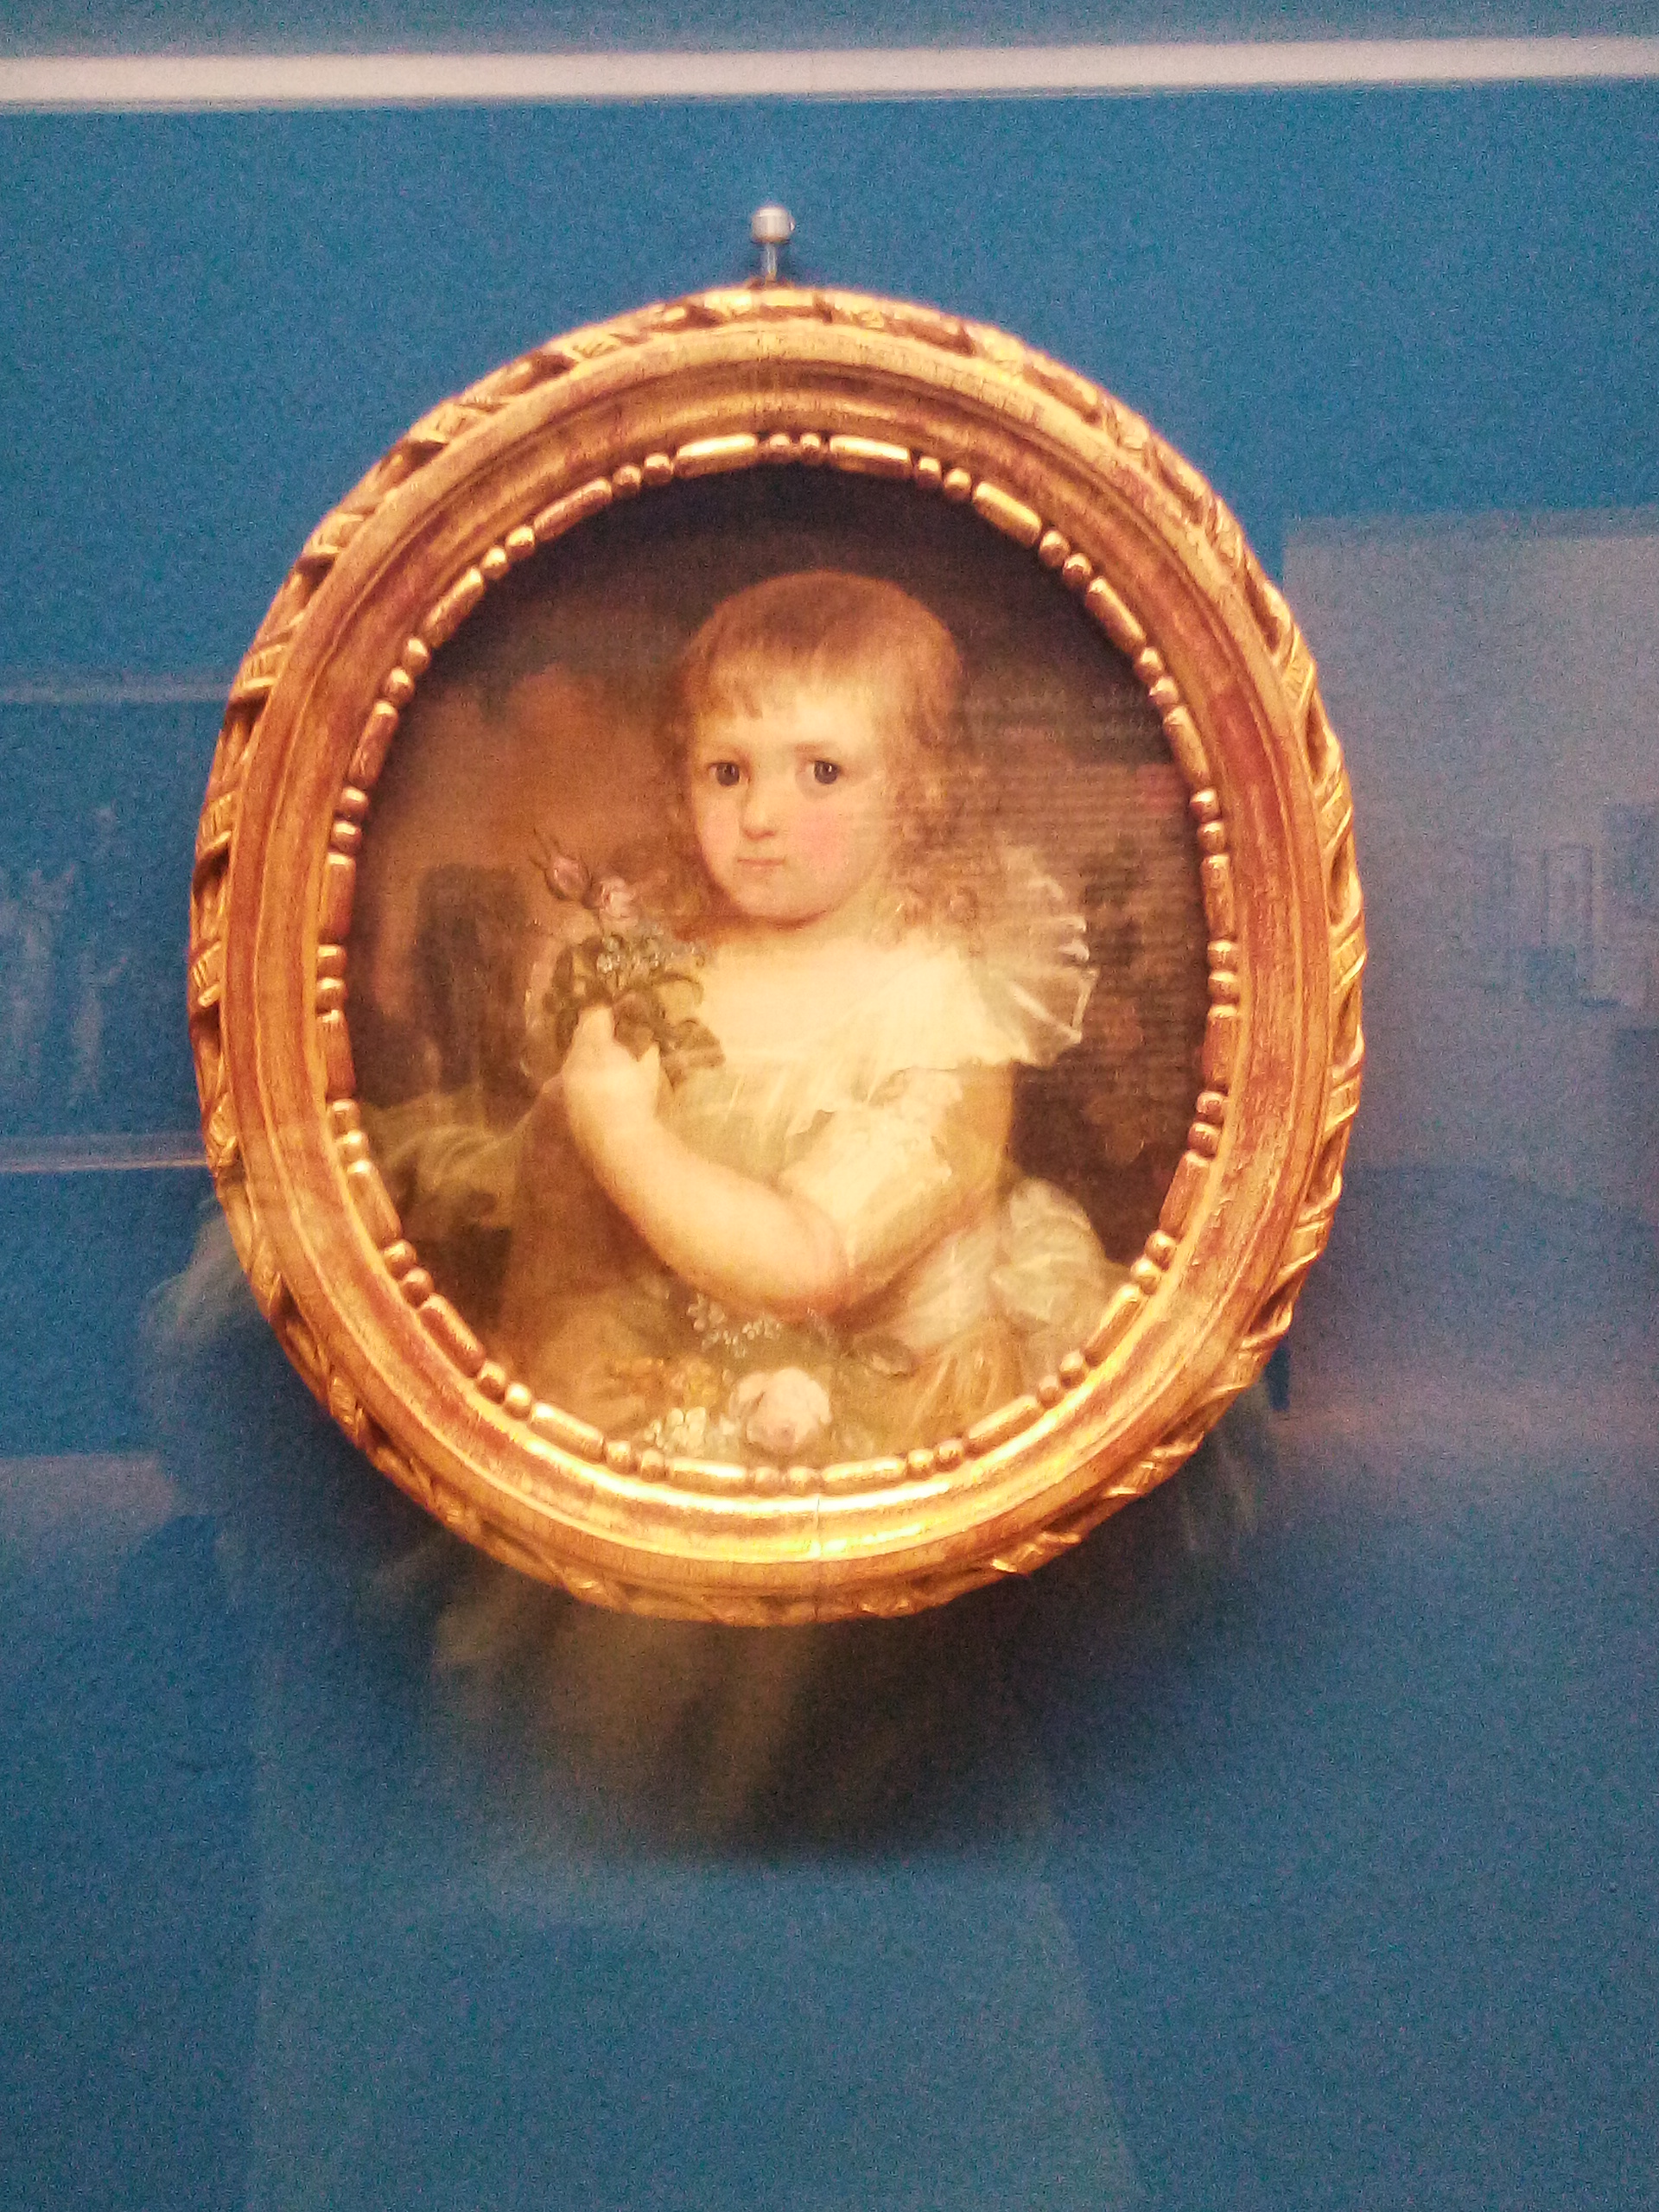 Rincklage (1764-1813) Gräfin Franziska von Galen als Kind um 1792/93